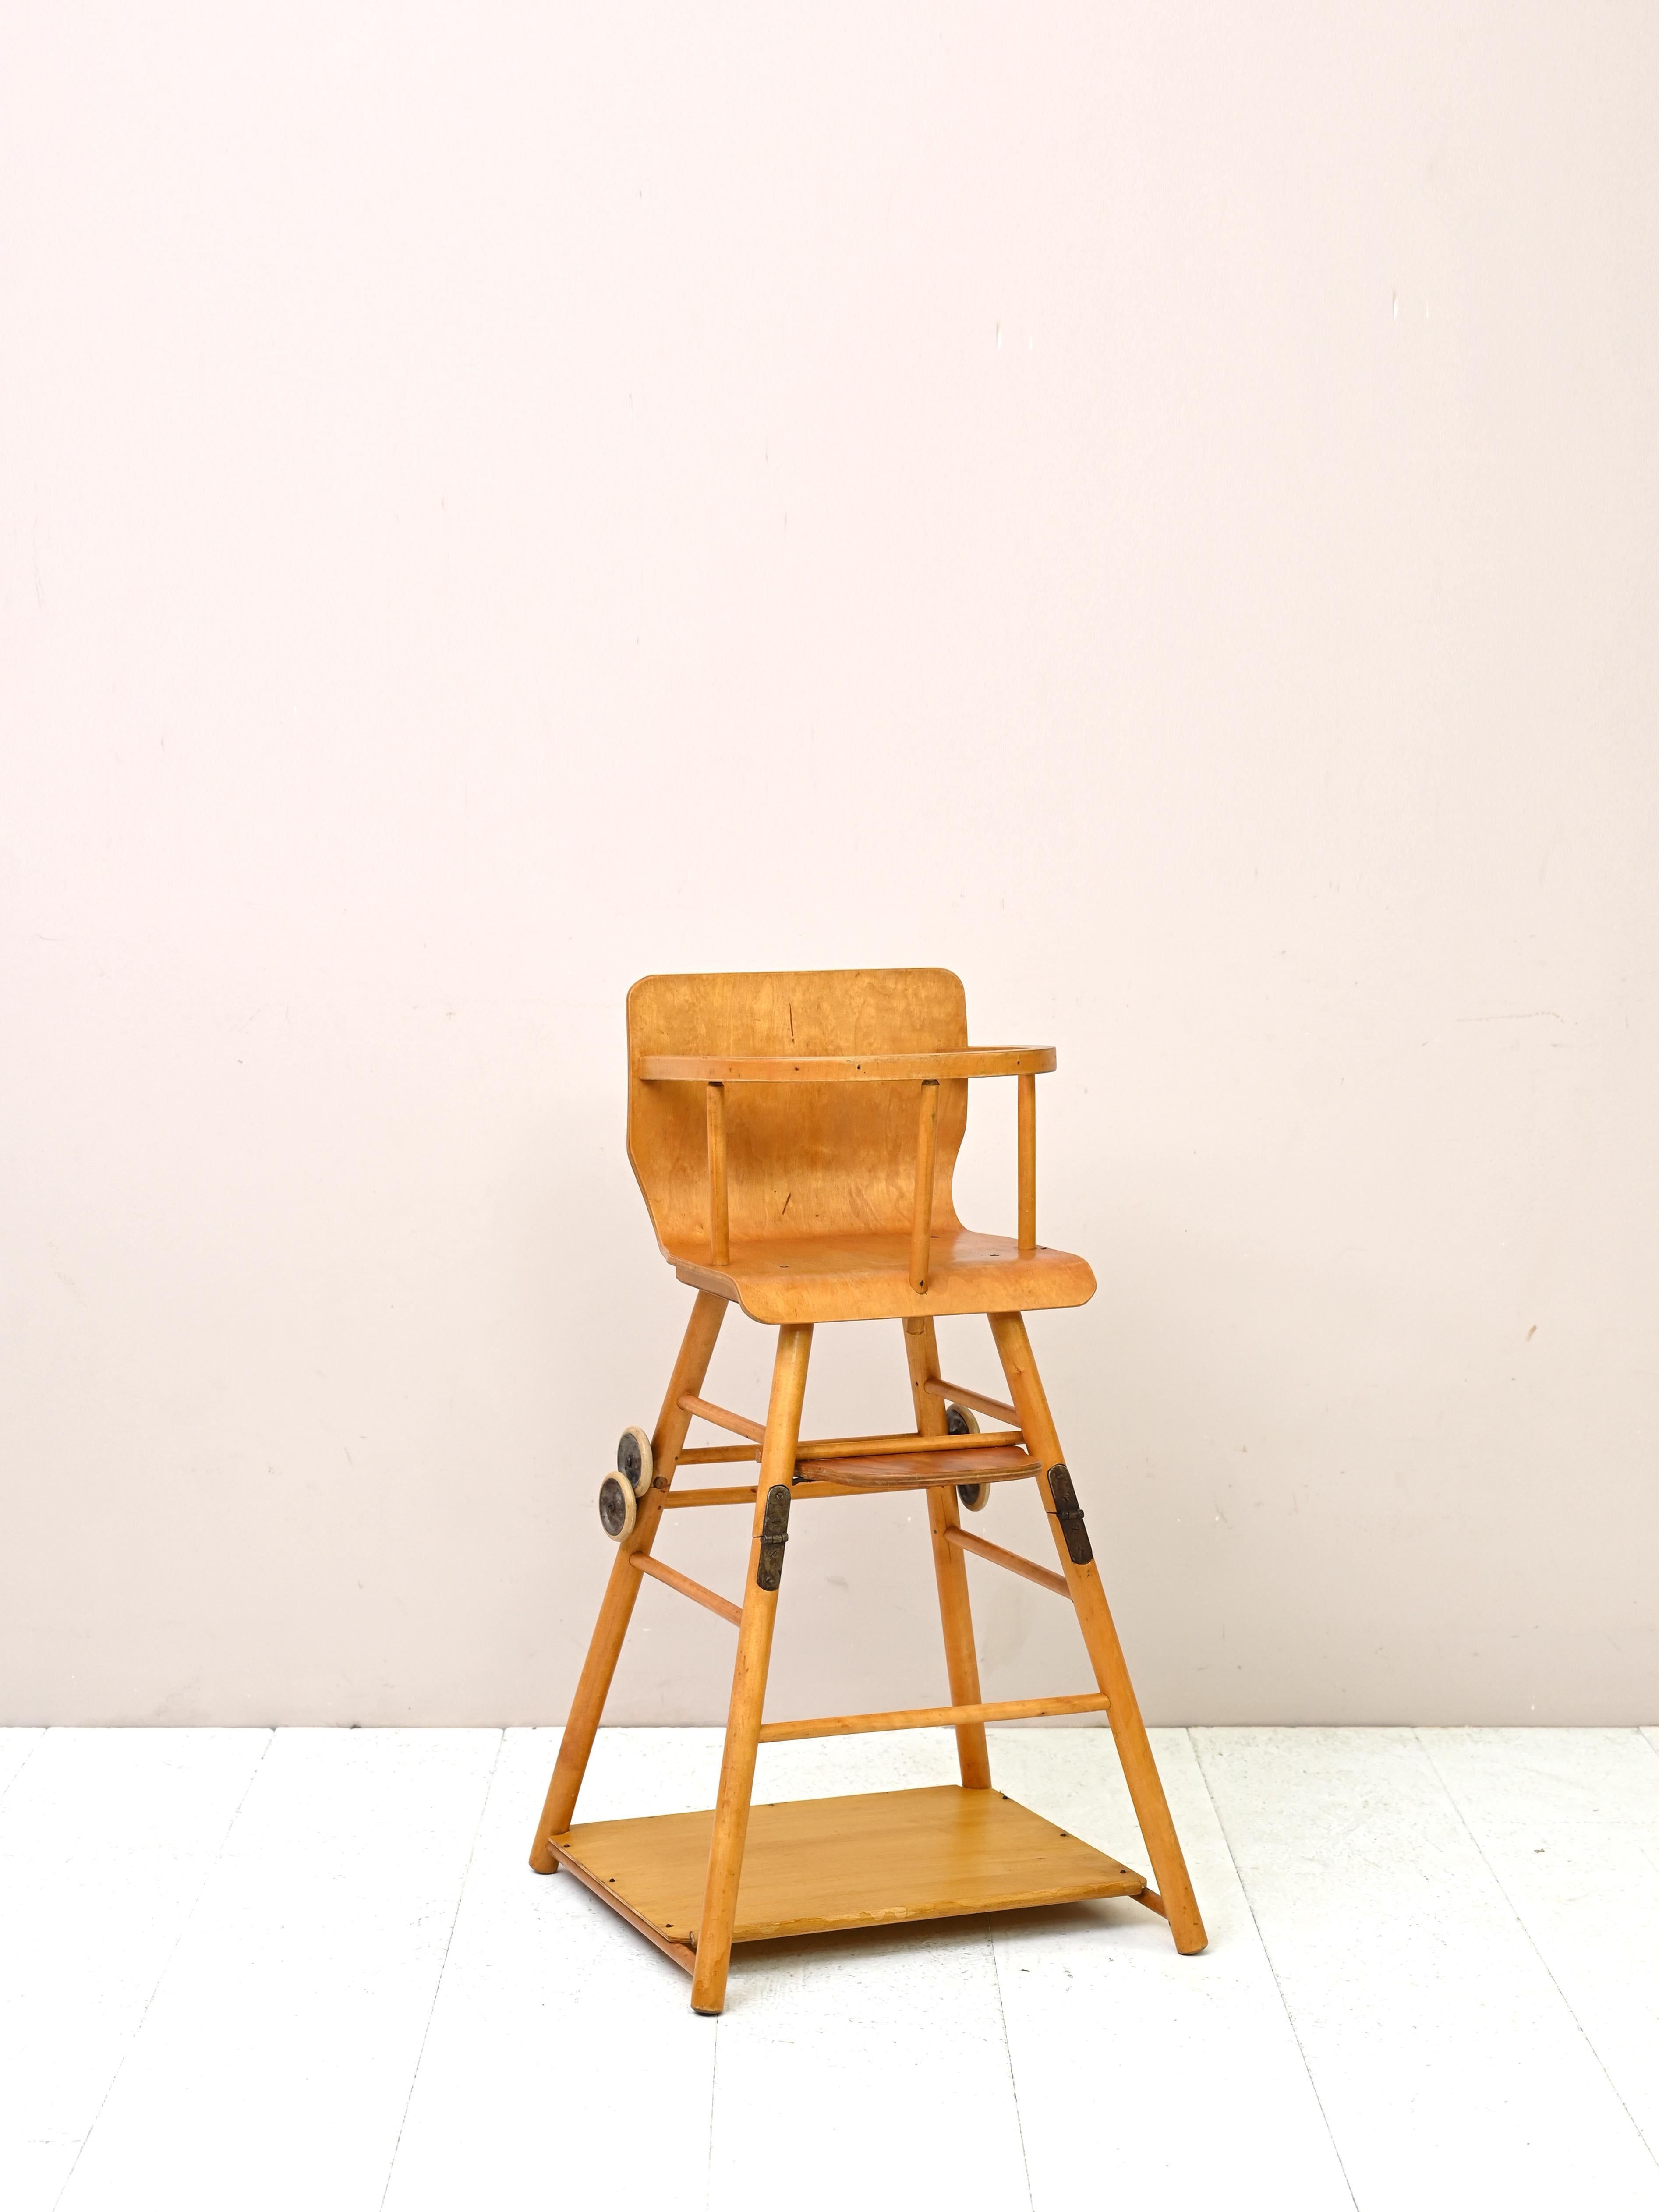 Original Vintage Babystuhl und Lauflernhilfe
Ein besonders modernes antikes Stück in sehr gutem Zustand mit der Doppelfunktion von Hochstuhl und Lauflernhilfe.

Guter Zustand. Sie wurde mit natürlichen Produkten wiederhergestellt. Sie kann einige